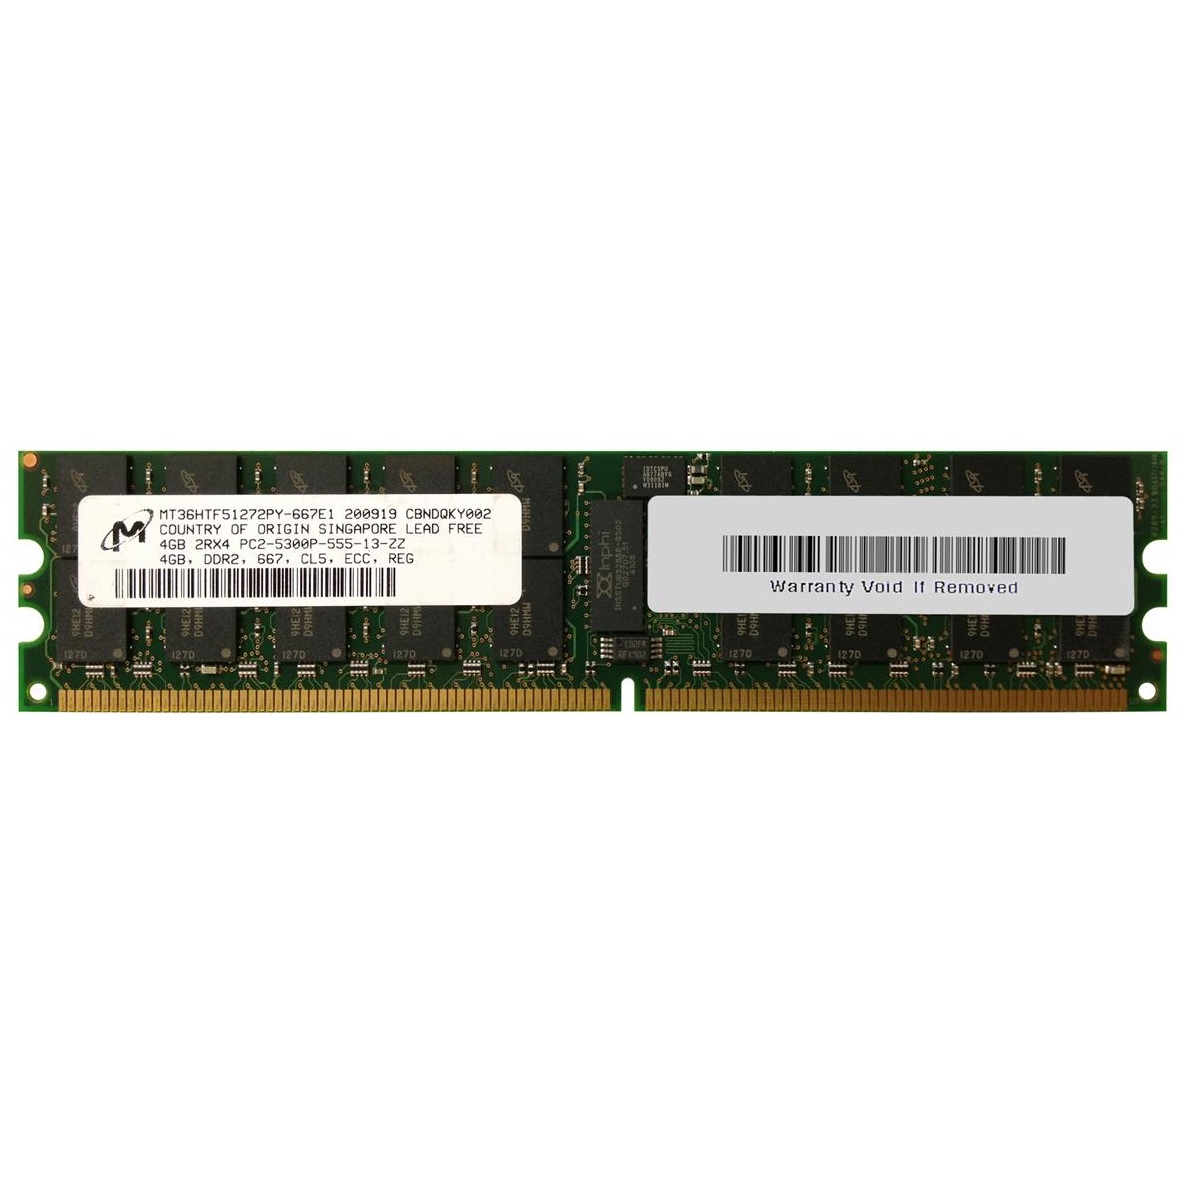 رم سرور DDR2 تک کاناله 667 مگاهرتز CL5 میکرون مدل MT36HTF51272PY-667E1 ظرفیت 4 گیگابایت